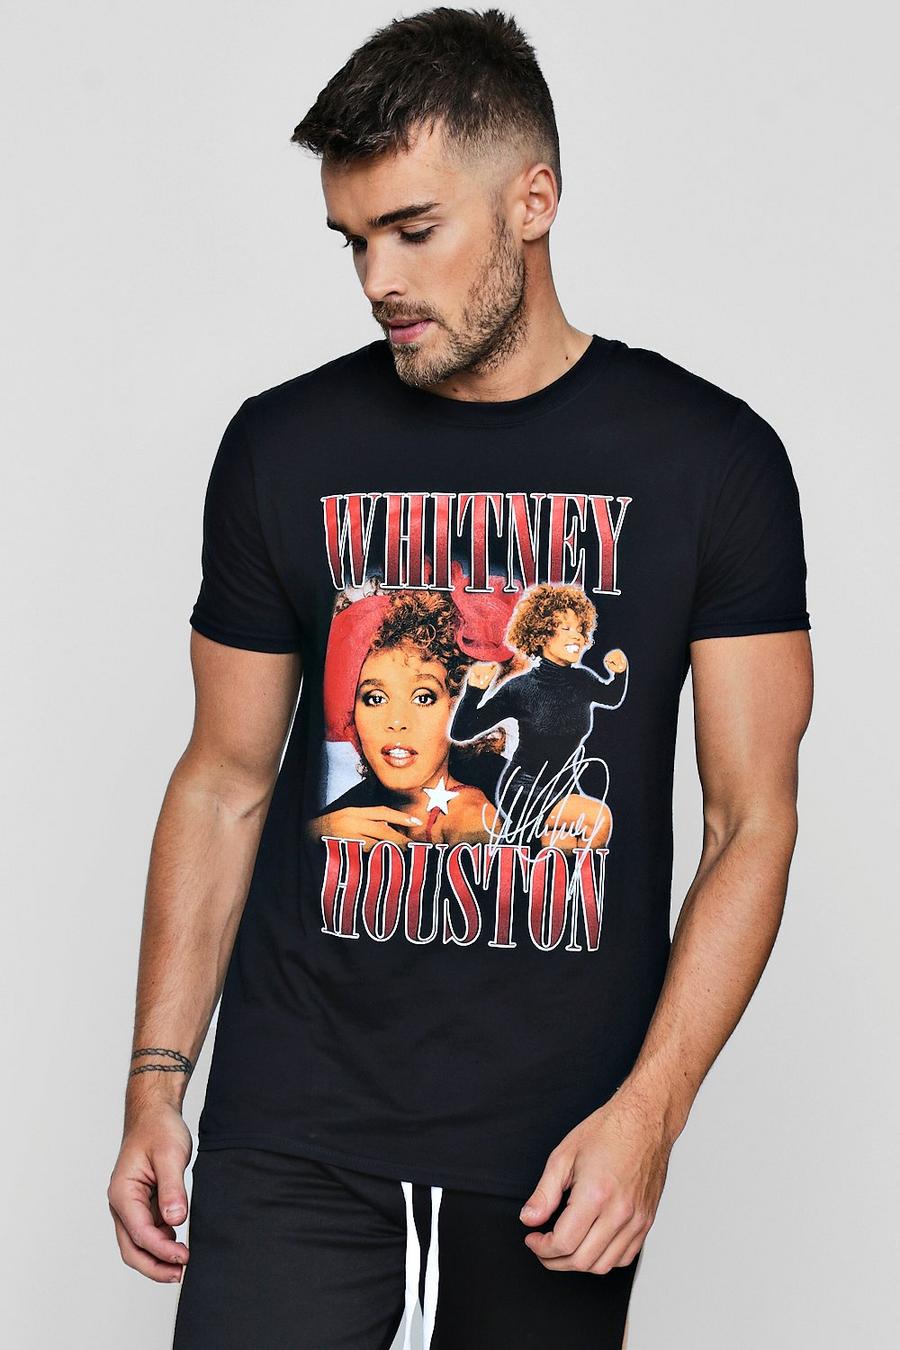 Whitney Oversized T-Shirt